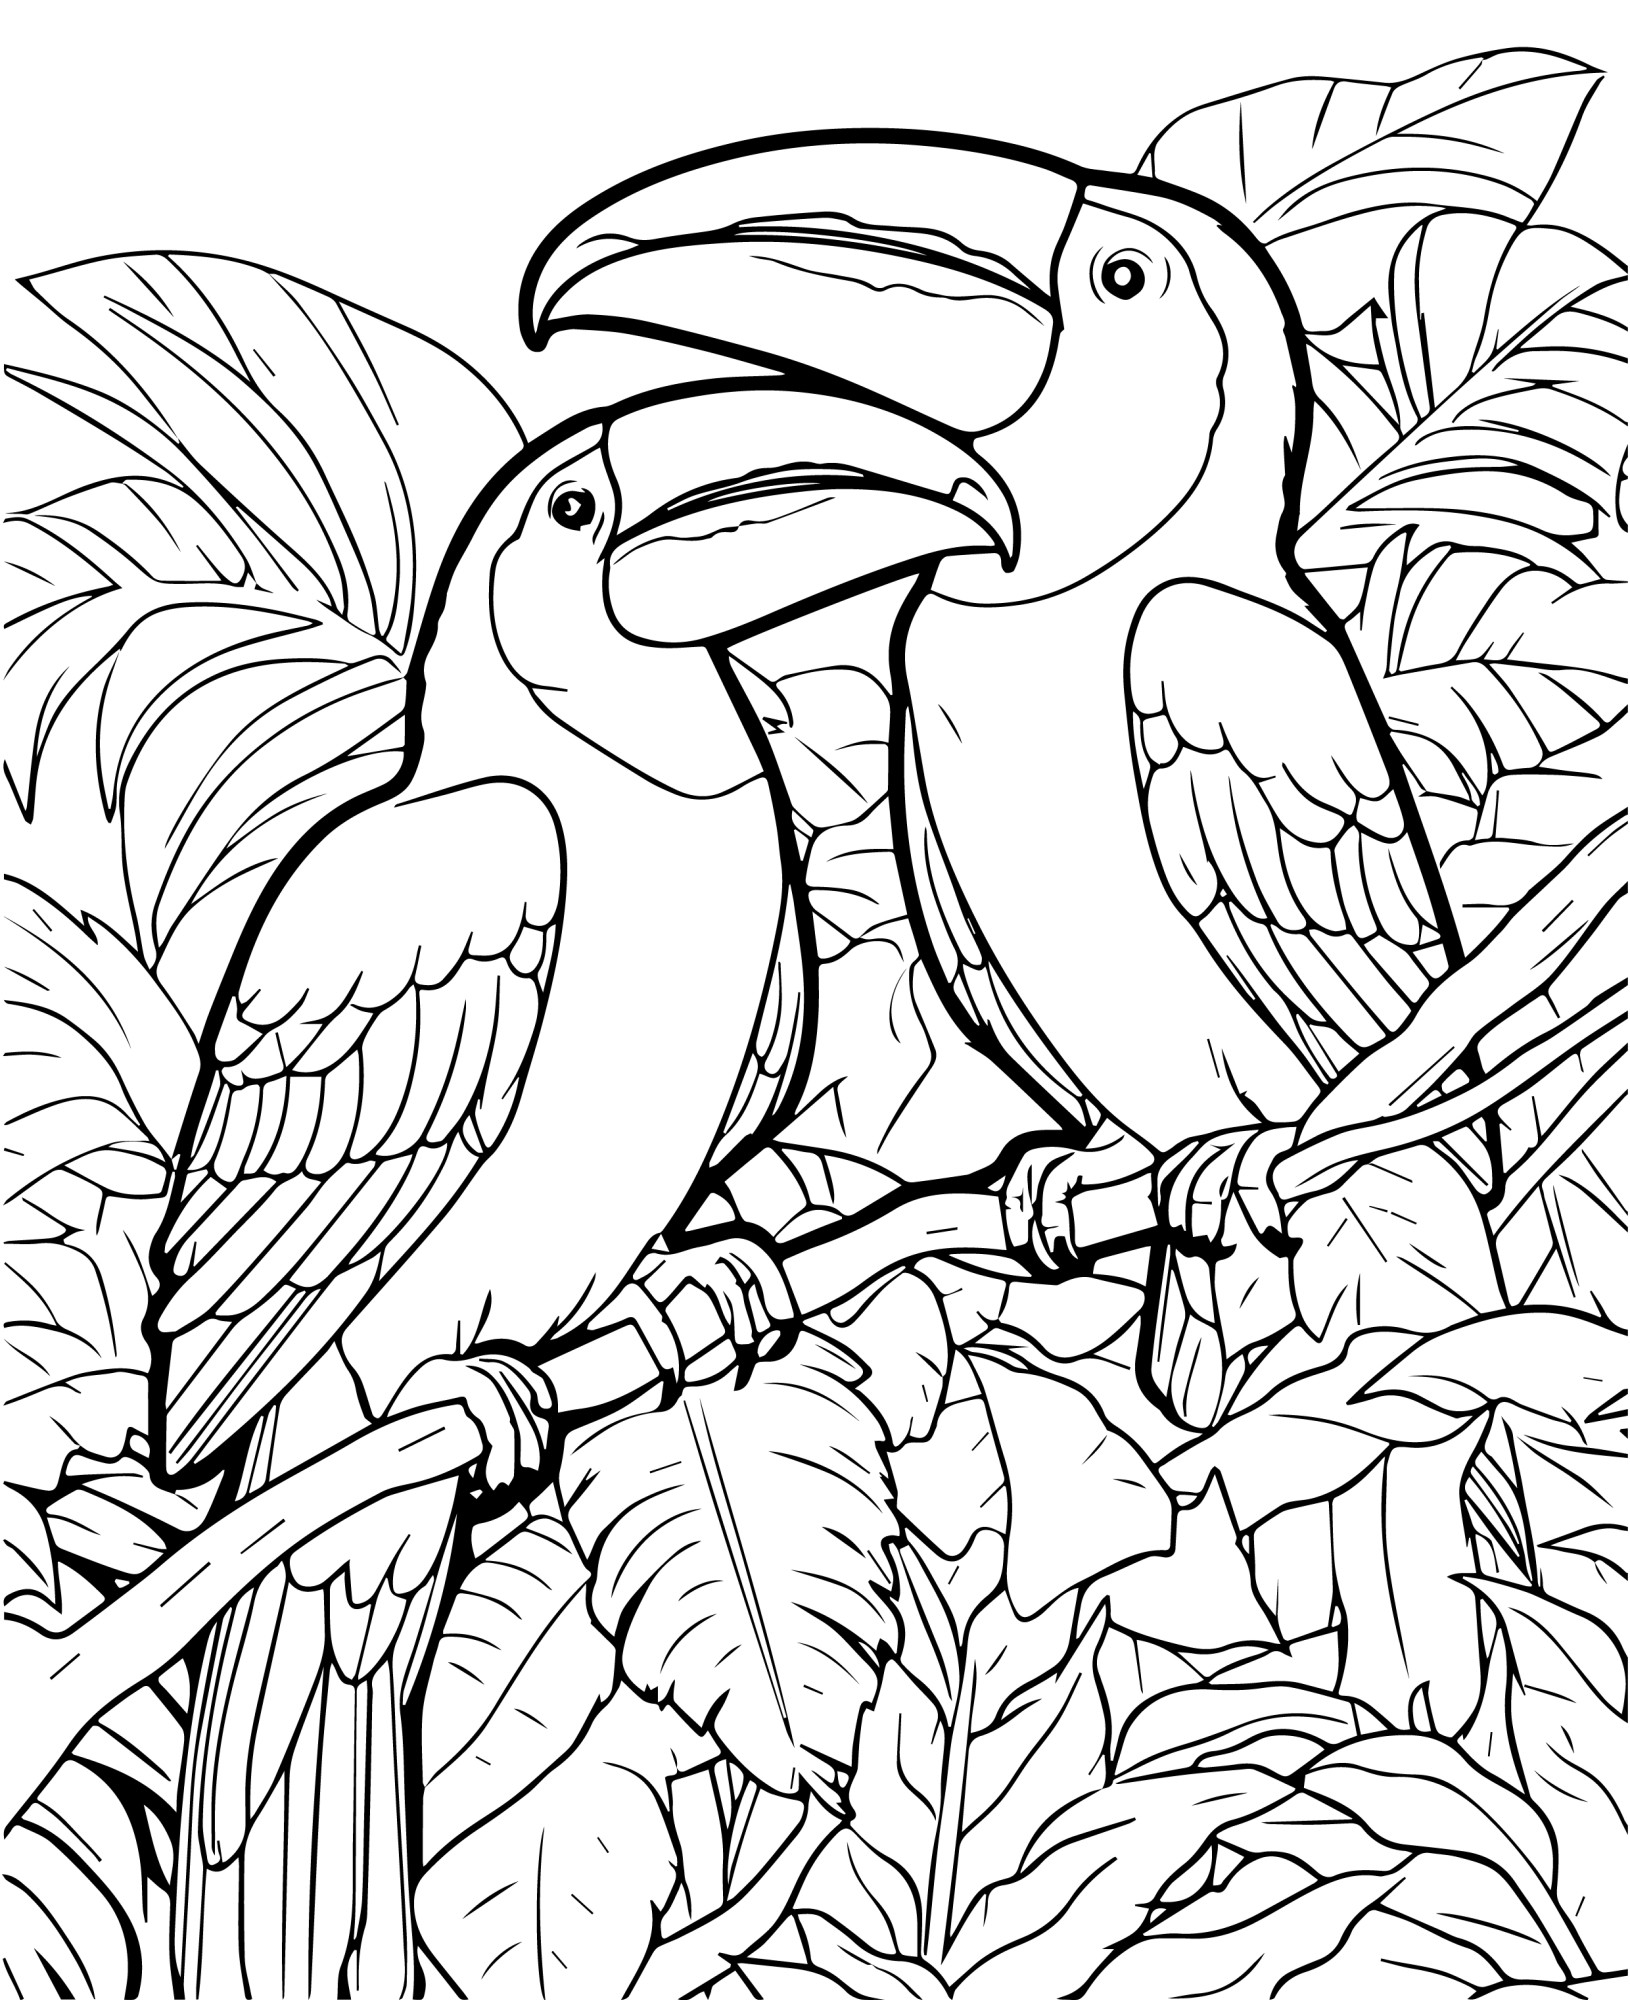 Раскраска для детей: два тукана на ветке в джунглях